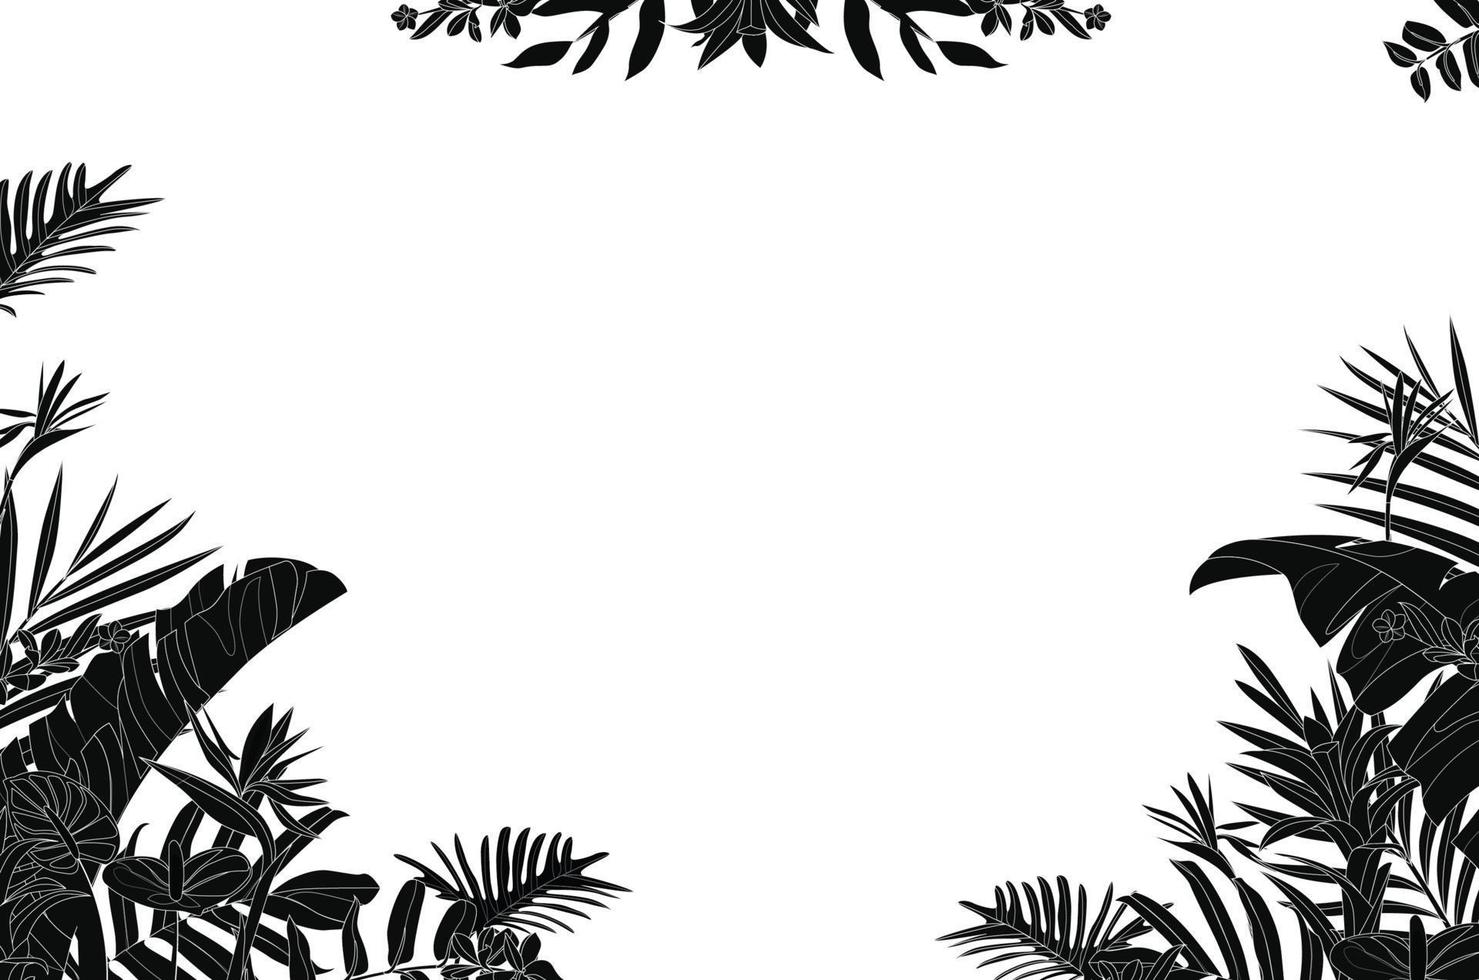 imprimir estilo de fondo blanco y negro, selva floral exótica. patrón de vector transparente de moda.